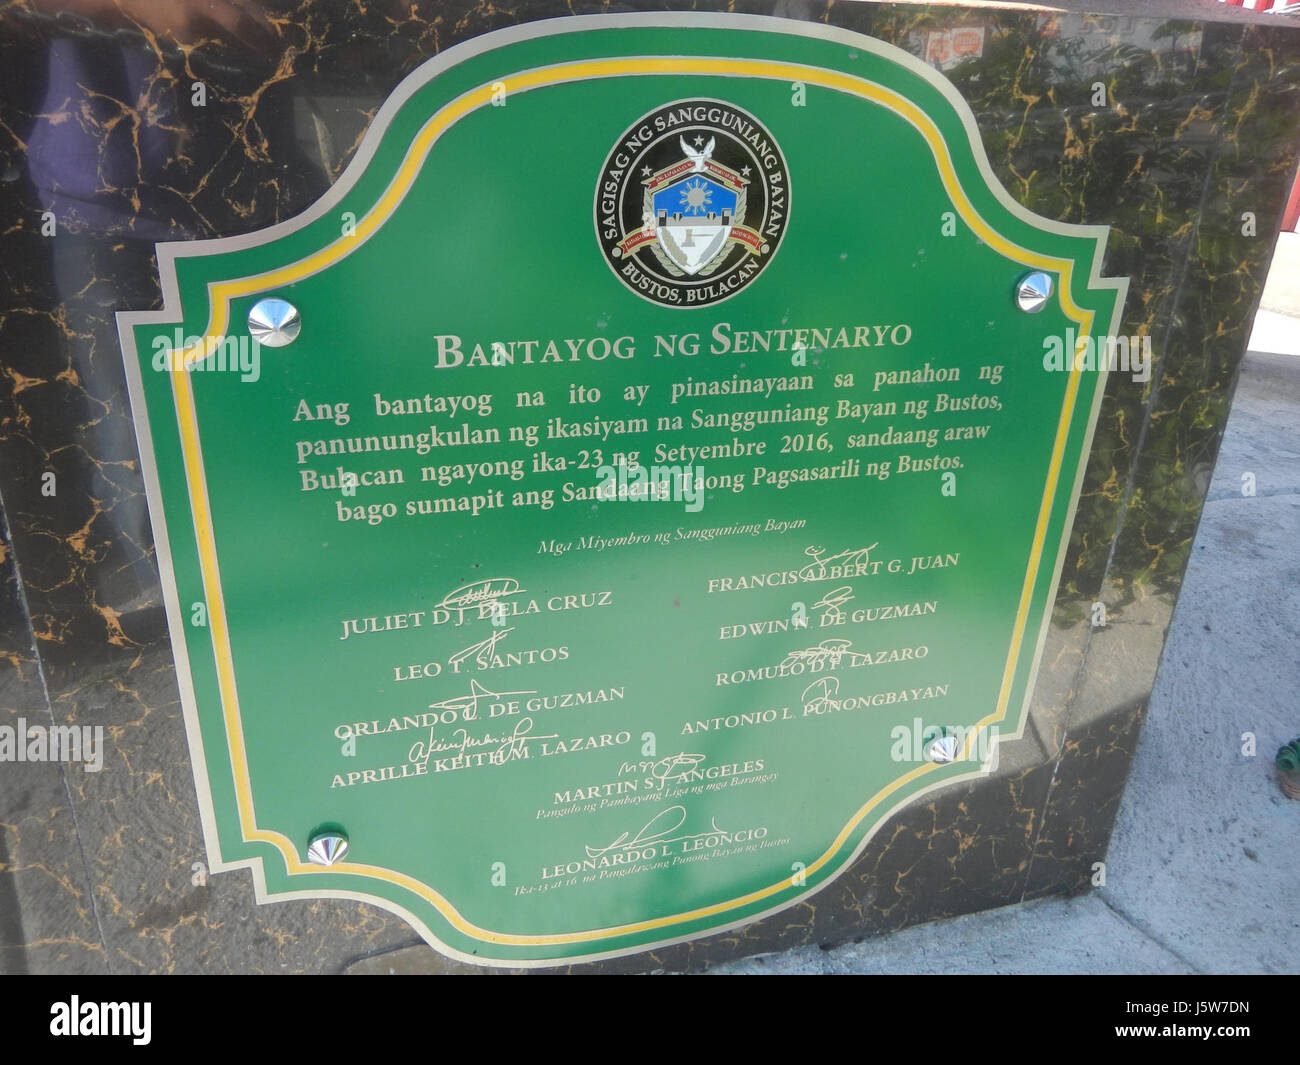 0214 Bantayog ng Sentenaryo Bustos Bulacan 1917-2017 11 Foto de stock